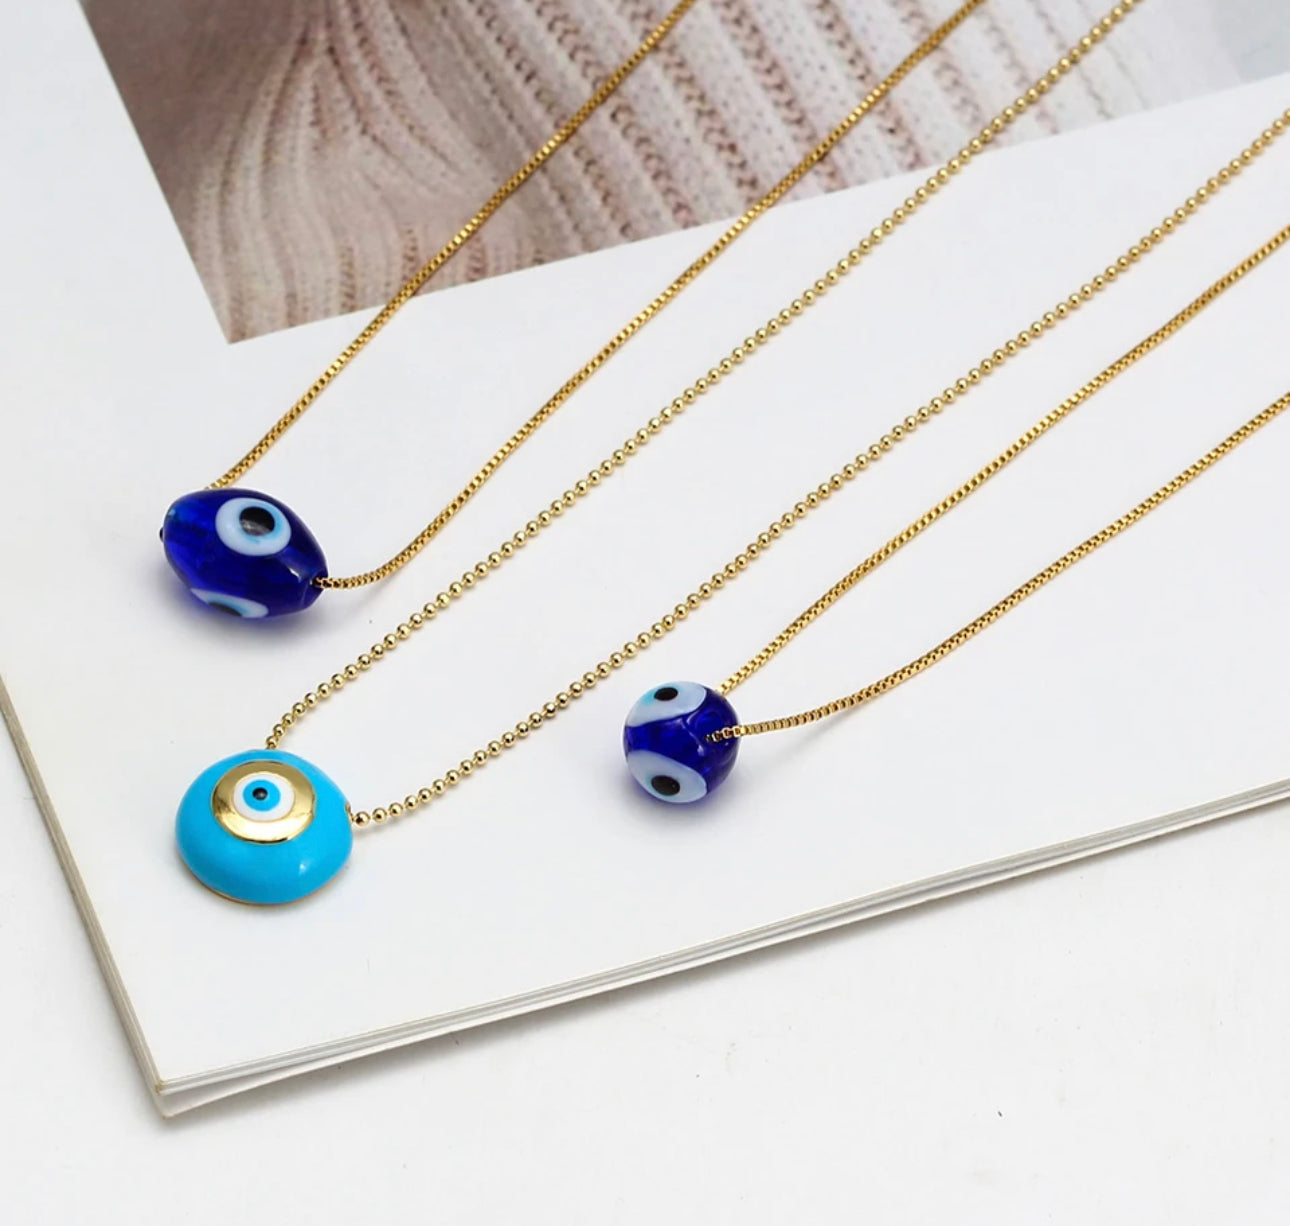 Erika Williner Designs - Turkish eye necklace